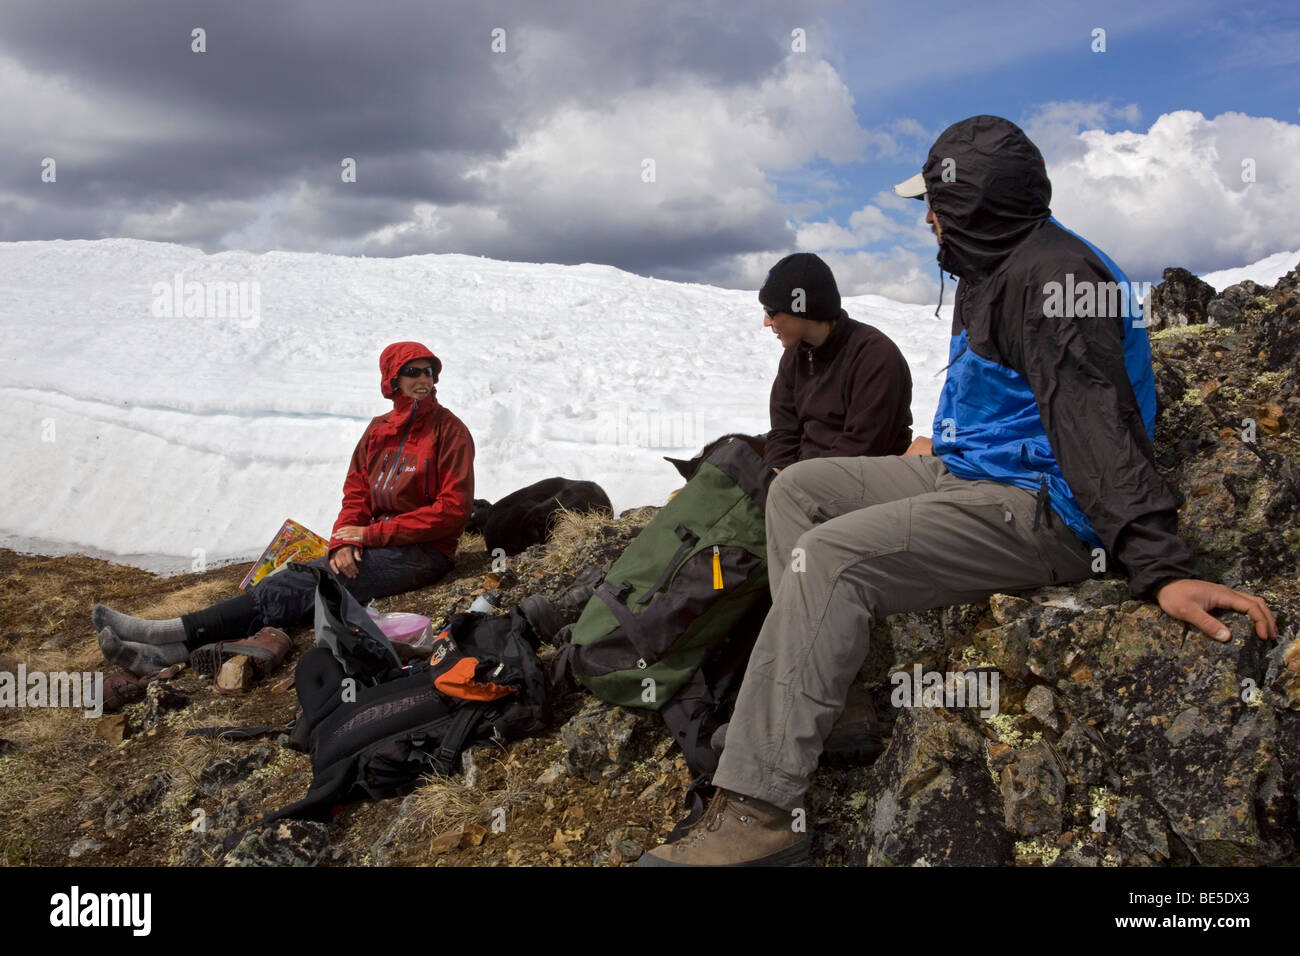 Groupe de randonneurs se reposant, Mt. Lorne, chaîne de montagnes de la côte du Pacifique, territoire du Yukon, Canada, Amérique du Nord Banque D'Images